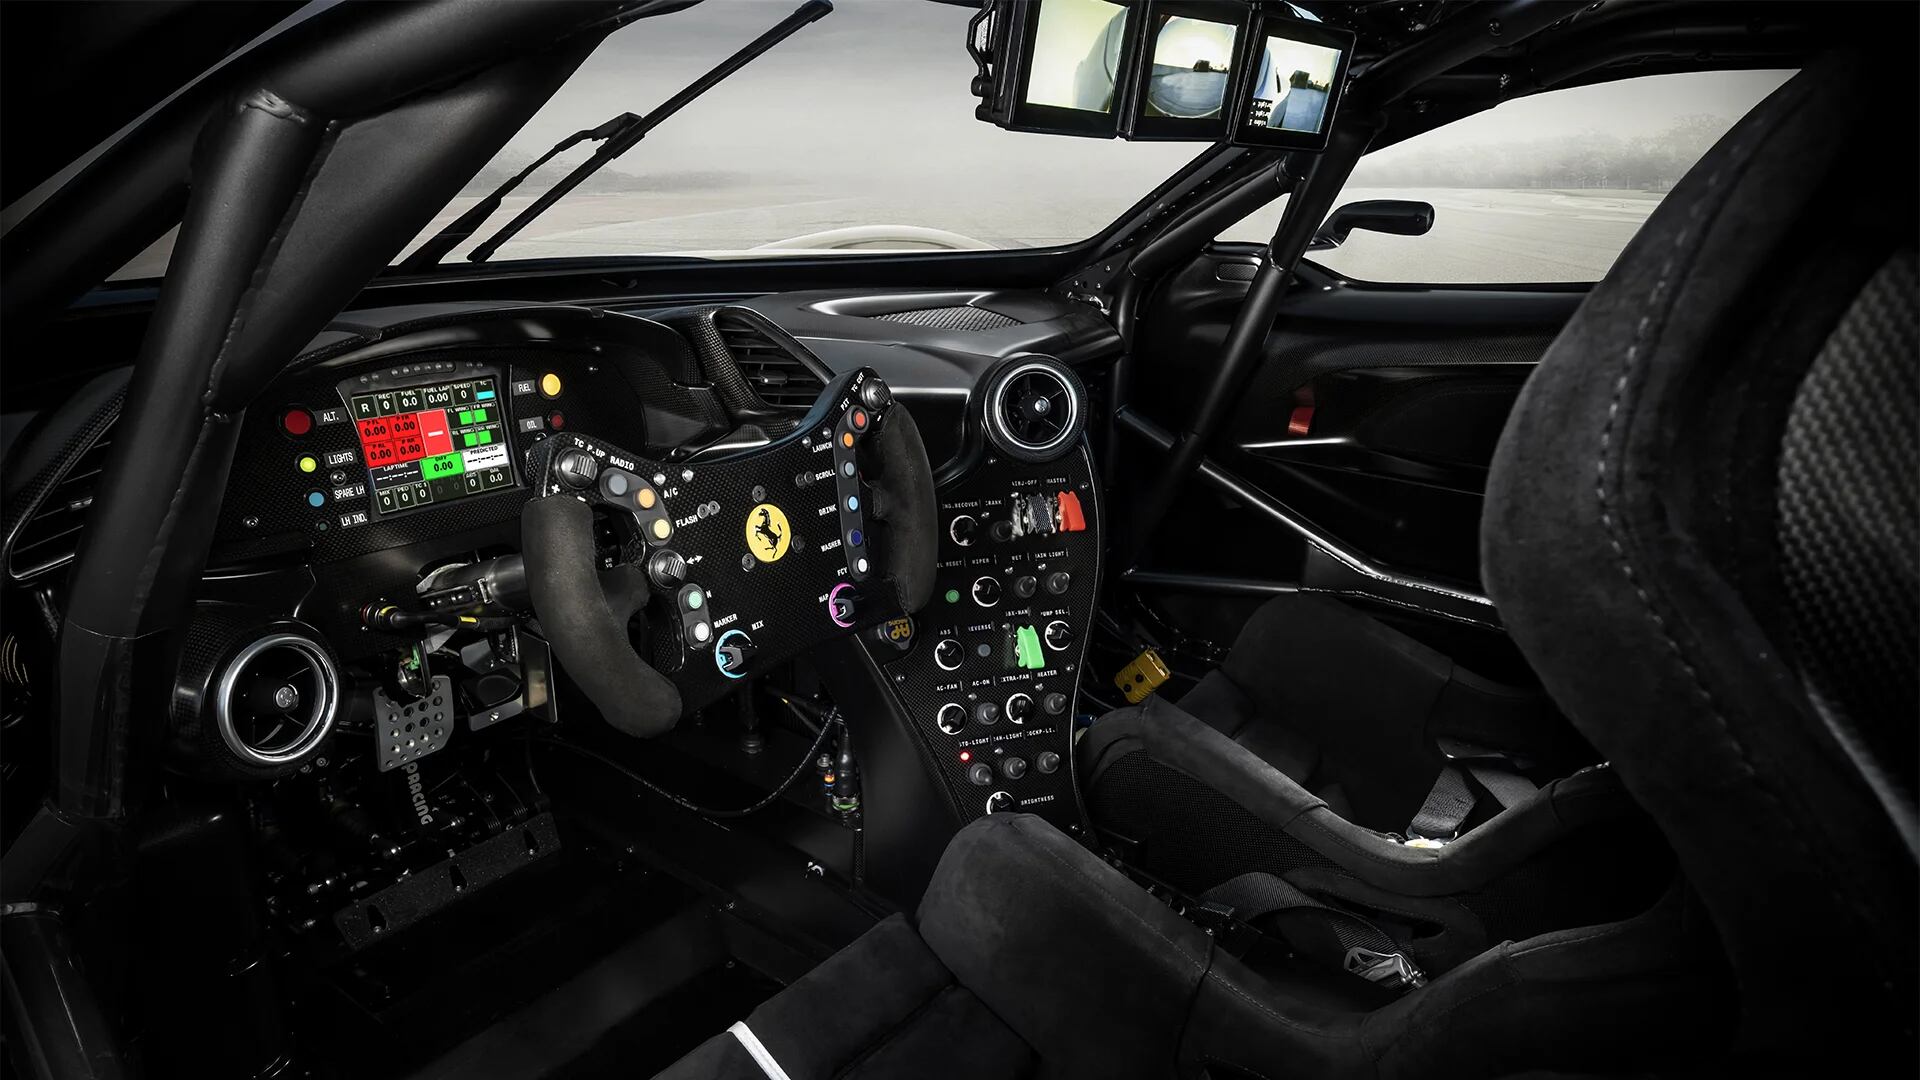 El interior es el de un auto de carreras, pero con elementos especiales como el espejo retrovisor que muestra la vista de tres cámaras por separado